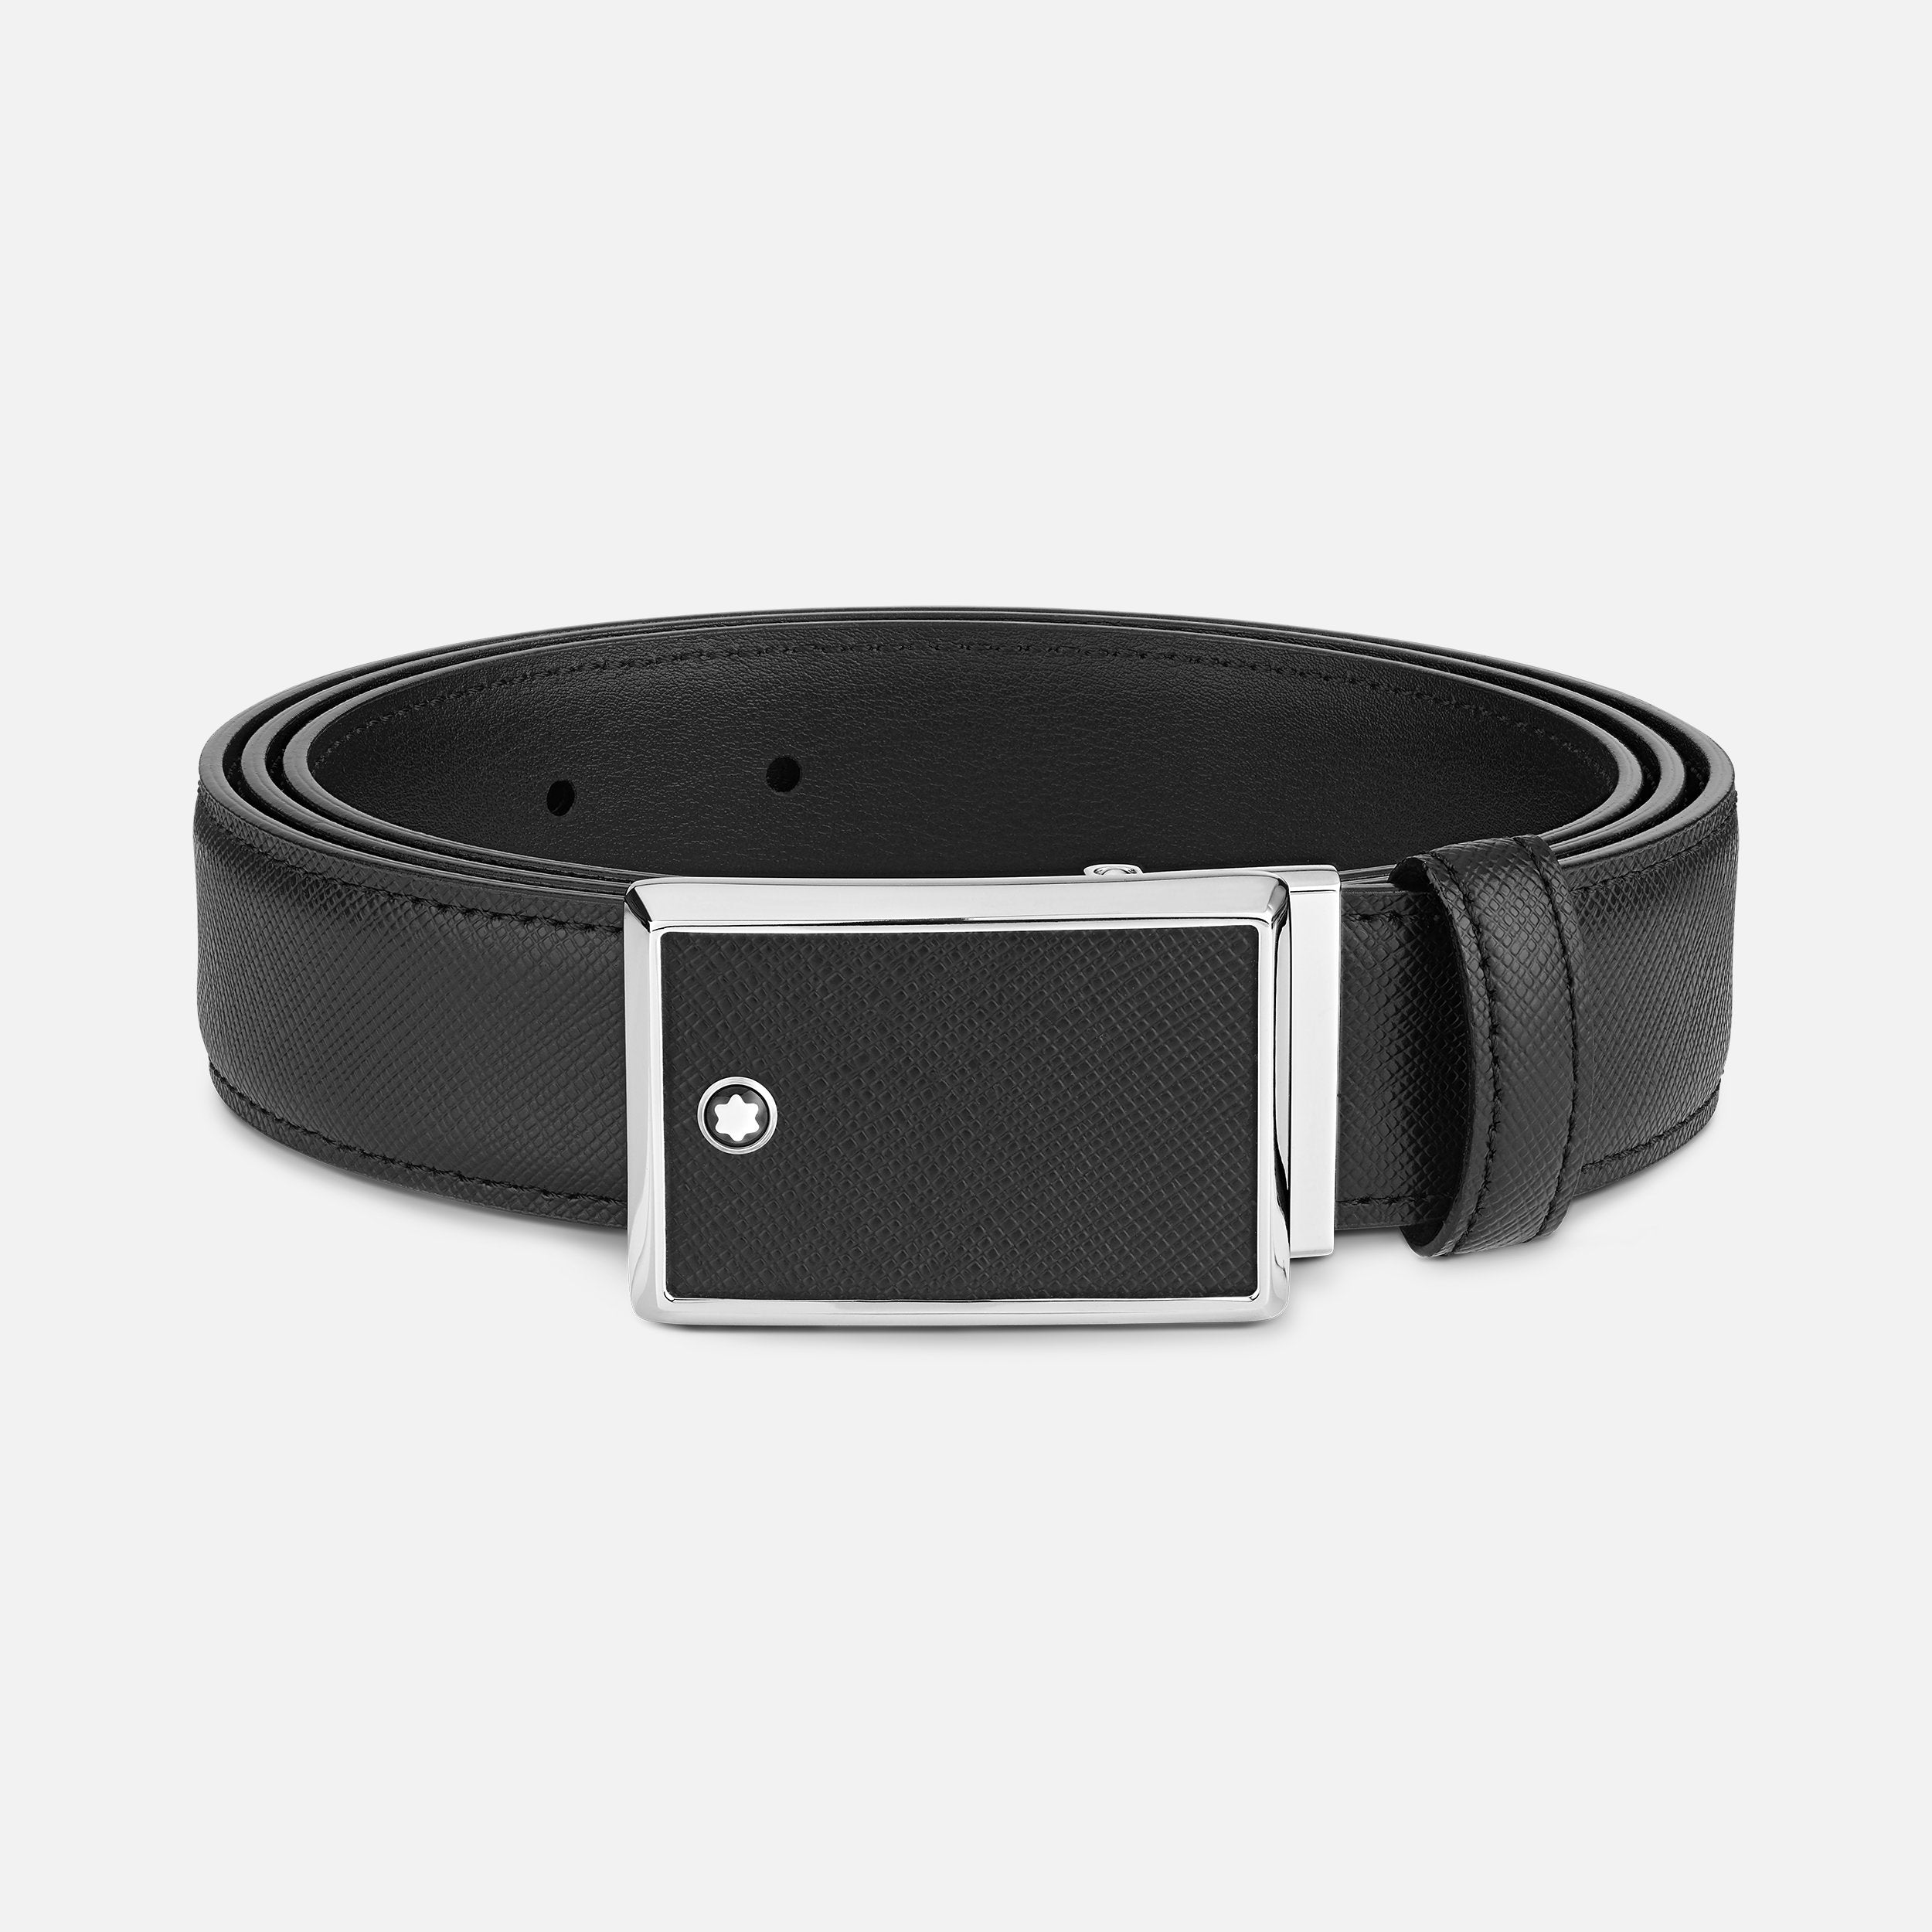 Black 30 mm leather belt